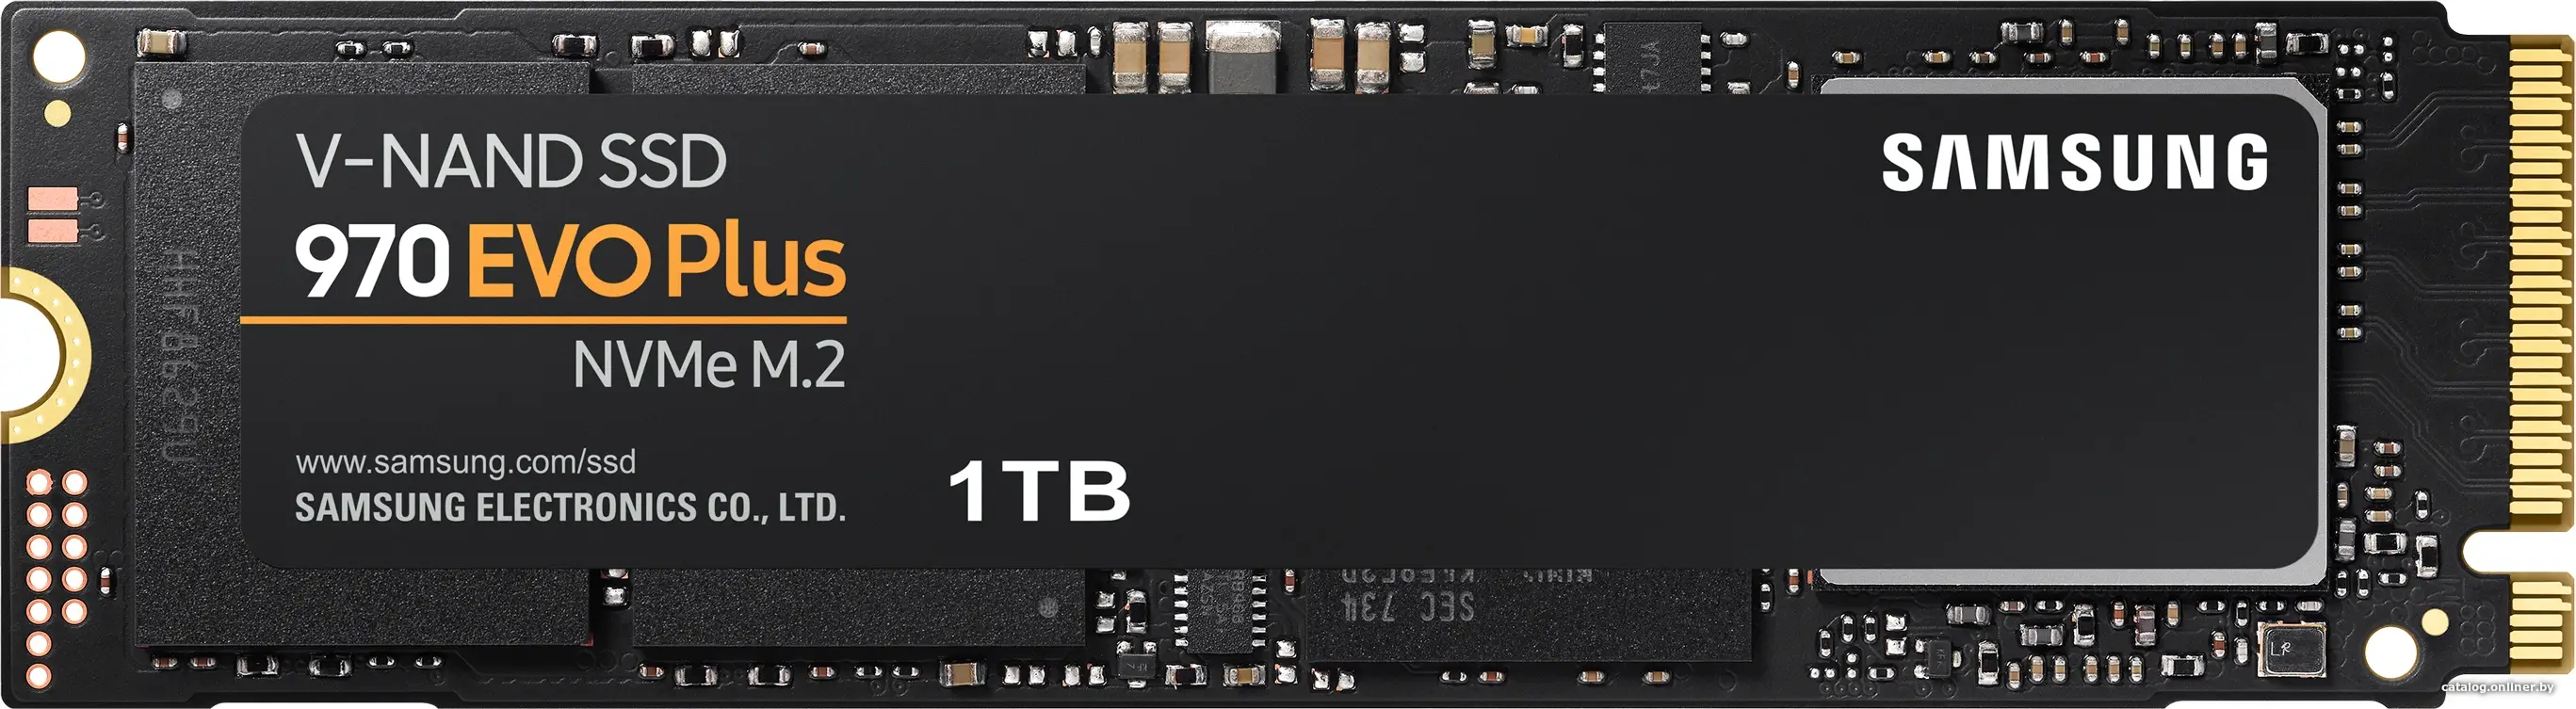 Купить 1Tb SSD Samsung 970 Evo Plus MZ-V7S1T0BW, (3500/3200), NVMe M.2, цена, опт и розница